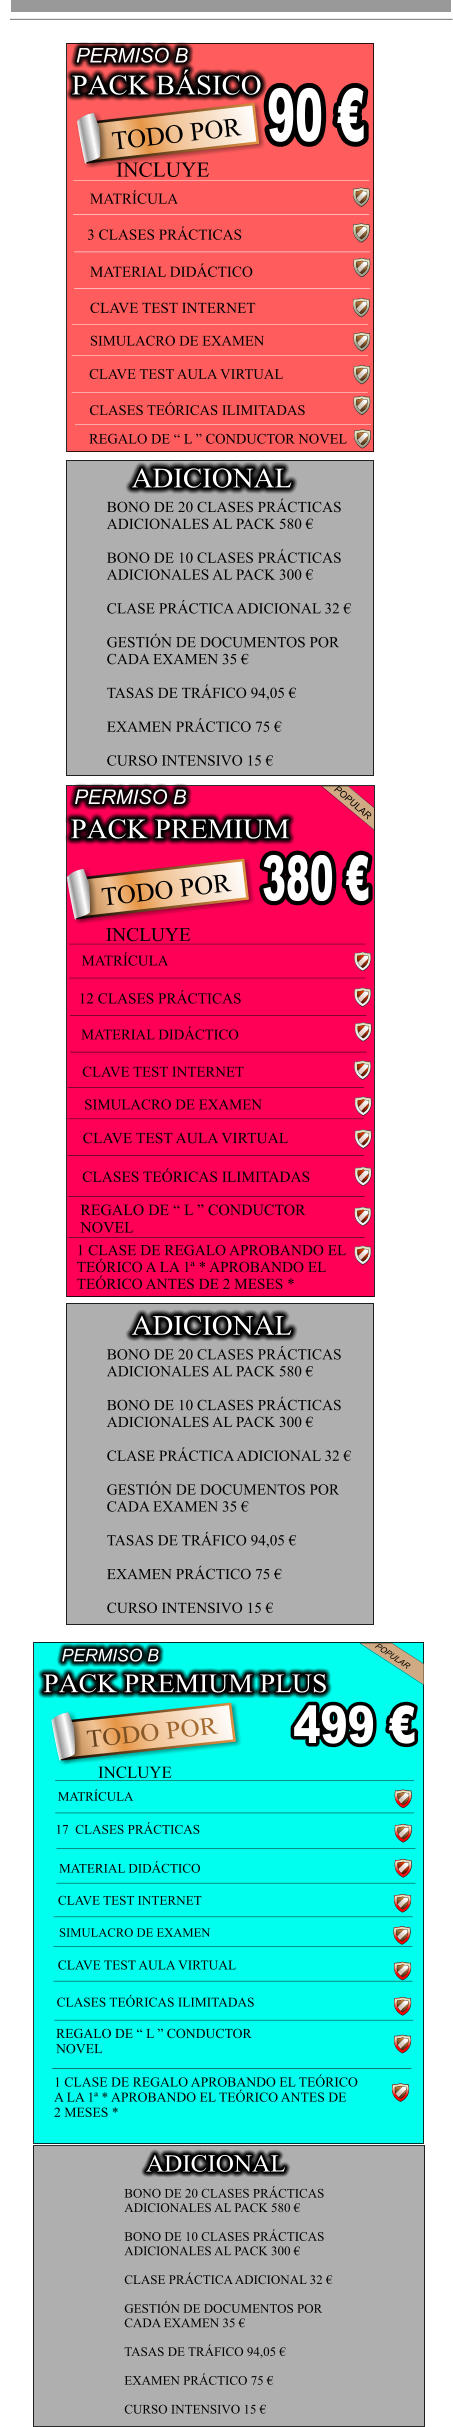 PACK BSICO                            90  TODO POR INCLUYE                                              MATRCULA  3 CLASES PRCTICAS     MATERIAL DIDCTICO     CLAVE TEST INTERNET   SIMULACRO DE EXAMEN  CLAVE TEST AULA VIRTUAL            CLASES TERICAS ILIMITADAS           REGALO DE  L  CONDUCTOR NOVEL    PERMISO B BONO DE 20 CLASES PRCTICAS  ADICIONALES AL PACK 580   BONO DE 10 CLASES PRCTICAS  ADICIONALES AL PACK 300   CLASE PRCTICA ADICIONAL 32   GESTIN DE DOCUMENTOS POR  CADA EXAMEN 35   TASAS DE TRFICO 94,05   EXAMEN PRCTICO 75   CURSO INTENSIVO 15  ADICIONAL PACK PREMIUM                             TODO POR                            380  PERMISO B POPULAR INCLUYE MATRCULA 12 CLASES PRCTICAS MATERIAL DIDCTICO CLAVE TEST INTERNET SIMULACRO DE EXAMEN CLAVE TEST AULA VIRTUAL CLASES TERICAS ILIMITADAS REGALO DE  L  CONDUCTOR  NOVEL 1 CLASE DE REGALO APROBANDO EL  TERICO A LA 1 * APROBANDO EL  TERICO ANTES DE 2 MESES * BONO DE 20 CLASES PRCTICAS  ADICIONALES AL PACK 580   BONO DE 10 CLASES PRCTICAS  ADICIONALES AL PACK 300   CLASE PRCTICA ADICIONAL 32   GESTIN DE DOCUMENTOS POR  CADA EXAMEN 35   TASAS DE TRFICO 94,05   EXAMEN PRCTICO 75   CURSO INTENSIVO 15  ADICIONAL MATERIAL DIDCTICO     CLAVE TEST INTERNET   SIMULACRO DE EXAMEN  PACK PREMIUM PLUS                             TODO POR                            499  PERMISO B POPULAR INCLUYE MATRCULA 17  CLASES PRCTICAS CLAVE TEST AULA VIRTUAL CLASES TERICAS ILIMITADAS REGALO DE  L  CONDUCTOR  NOVEL 1 CLASE DE REGALO APROBANDO EL TERICO  A LA 1 * APROBANDO EL TERICO ANTES DE  2 MESES * BONO DE 20 CLASES PRCTICAS  ADICIONALES AL PACK 580   BONO DE 10 CLASES PRCTICAS  ADICIONALES AL PACK 300   CLASE PRCTICA ADICIONAL 32   GESTIN DE DOCUMENTOS POR  CADA EXAMEN 35   TASAS DE TRFICO 94,05   EXAMEN PRCTICO 75   CURSO INTENSIVO 15  ADICIONAL